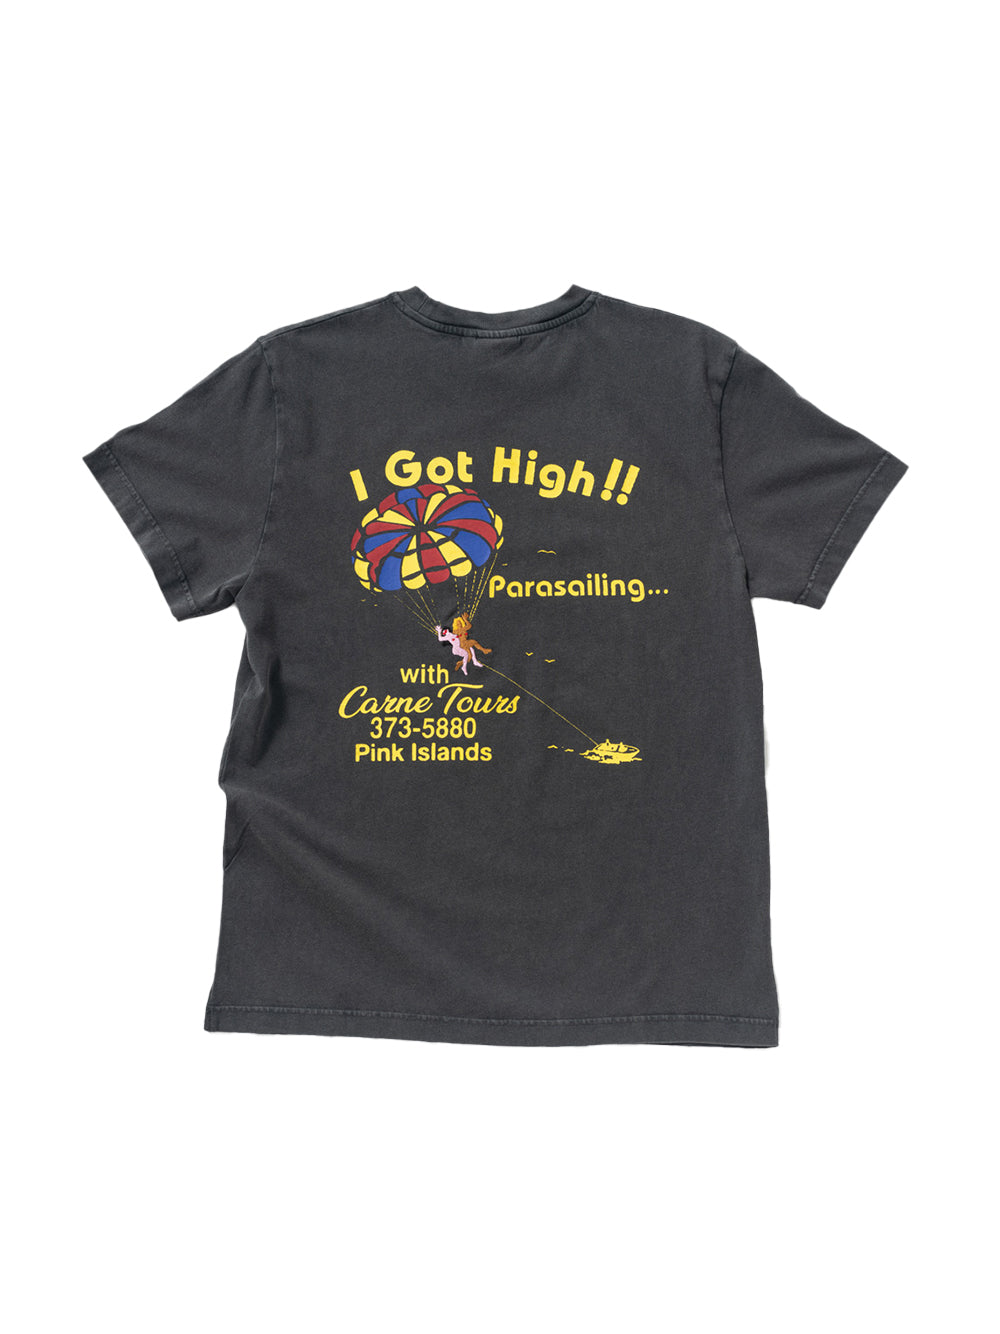 I Got High!! T-shirt